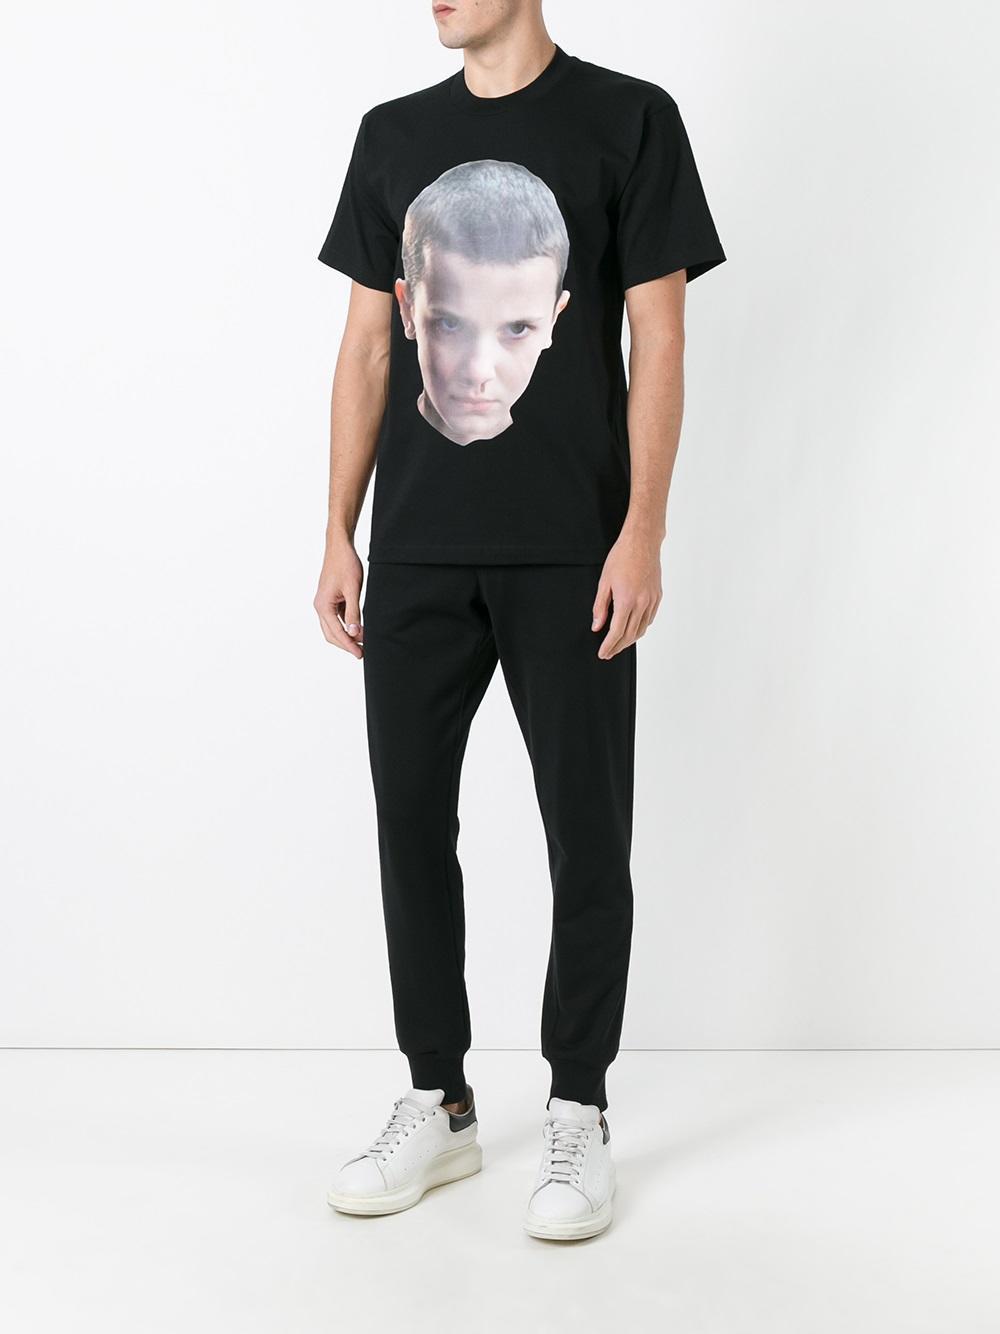 Lyst - Ih Nom Uh Nit Eleven T-shirt in Black for Men